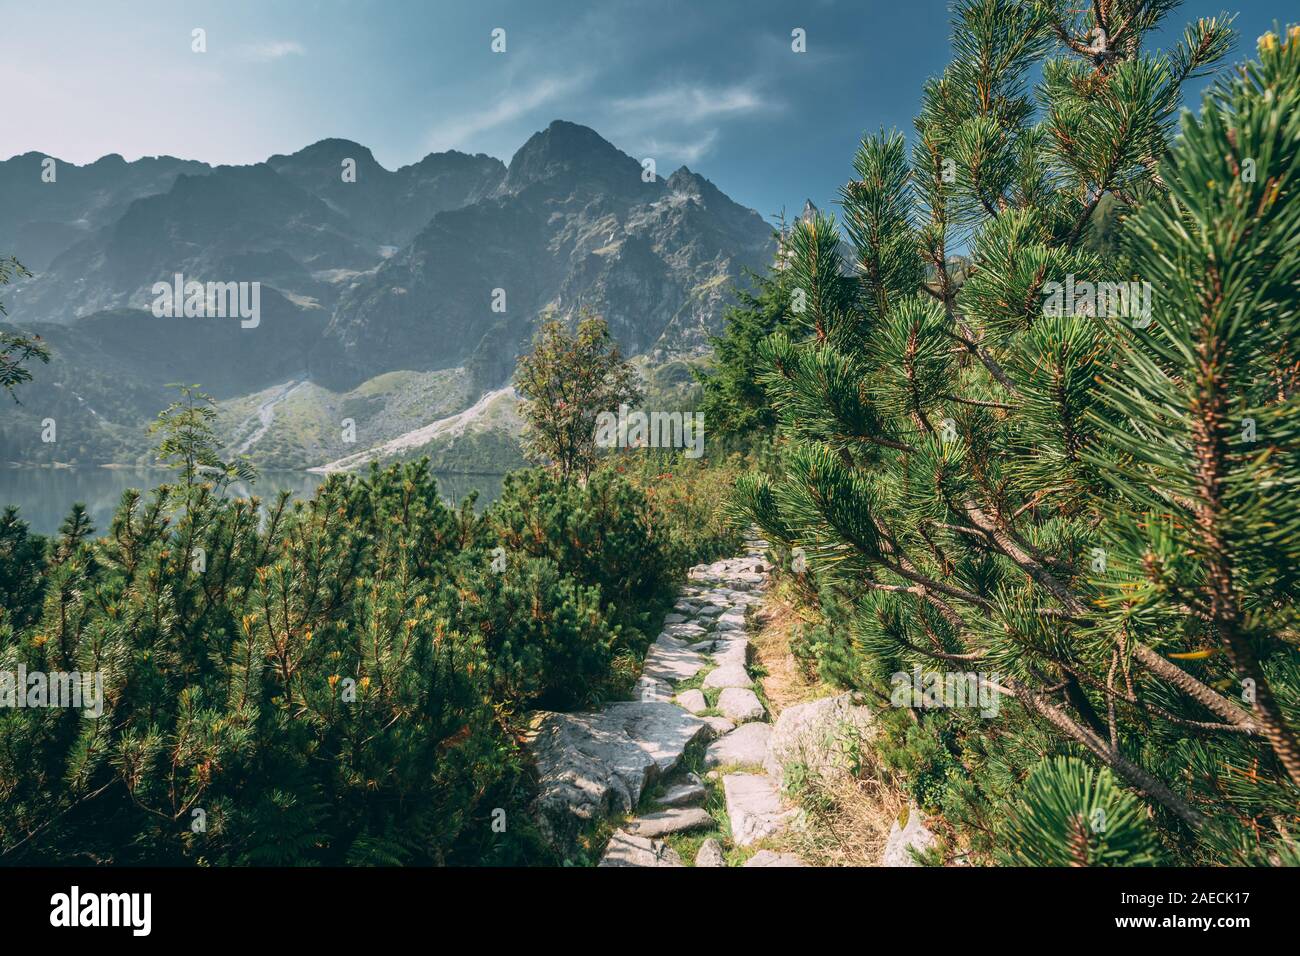 Parco nazionale dei Alti Tatra, Polonia. Sentiero vicino a Montagne Lago Morskie Oko o occhio di mare lago nella mattina d'estate. Cinque Laghi Valley. Bella vista panoramica. Europa Foto Stock